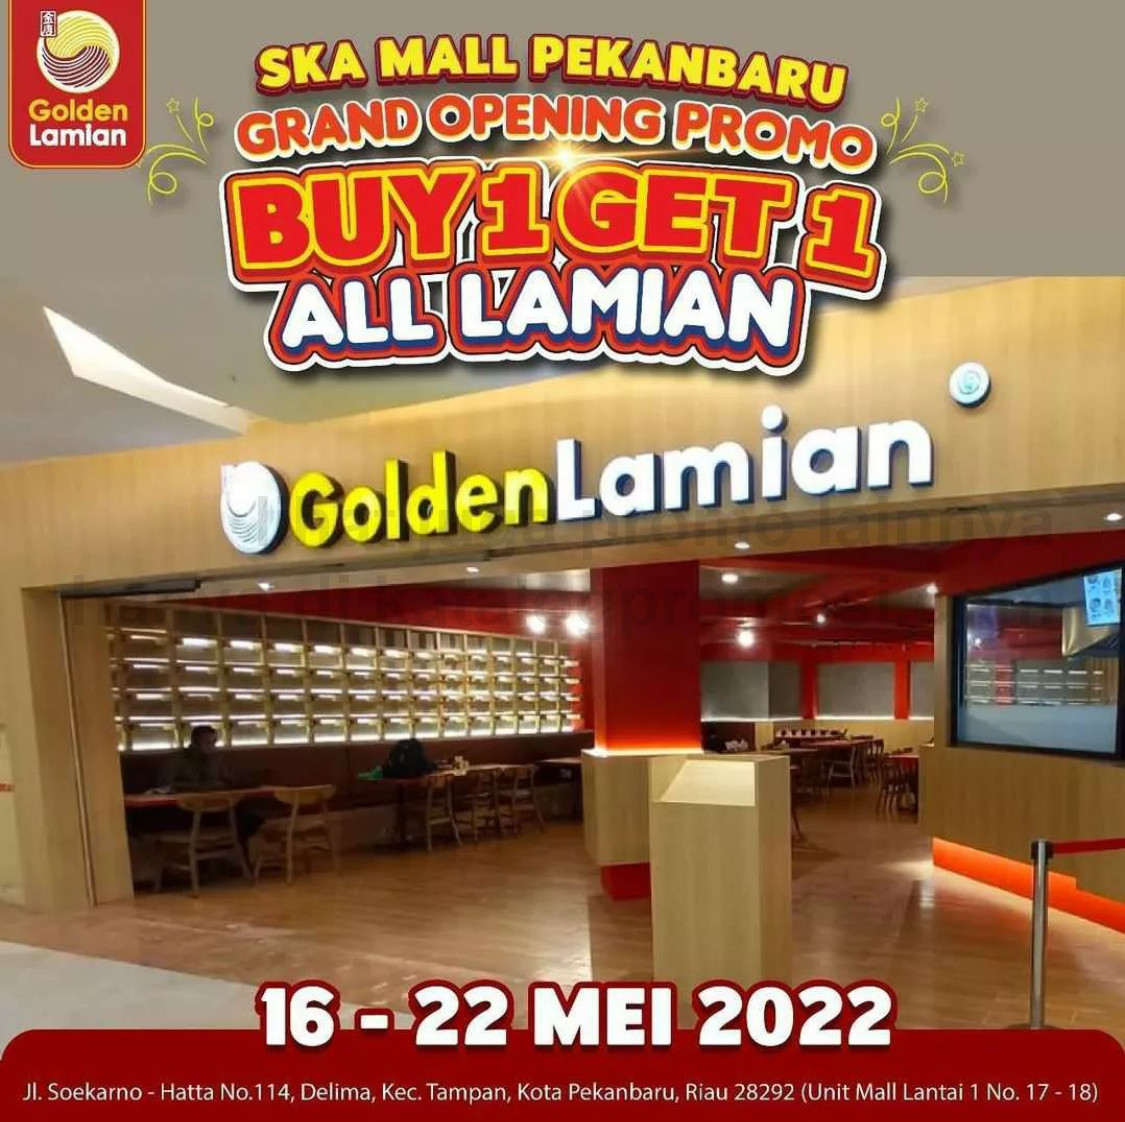 GOLDEN LAMIAN SKA Mall Pekanbaru Grand Opening Promo - BELI 1 GRATIS 1 untuk ALL LAMIAN